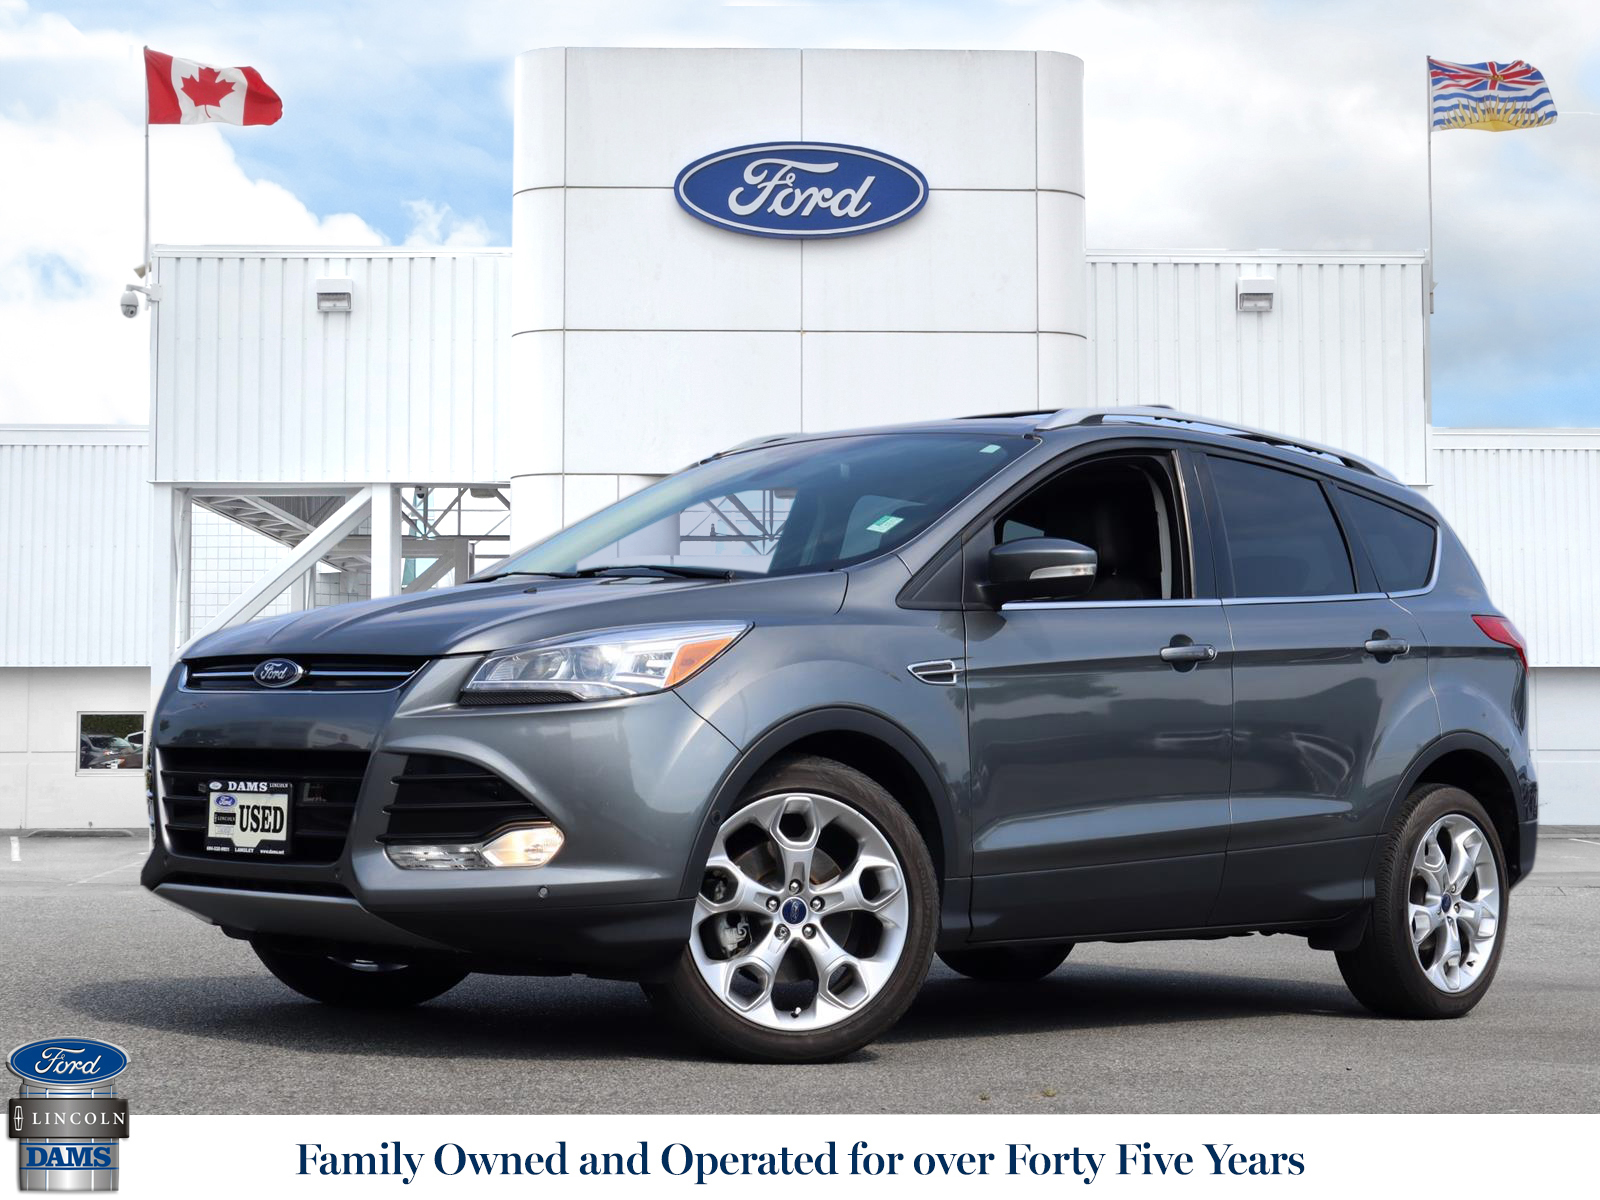 2014 Ford Escape Escape Titanium Sterling 2 0l L4 Dir Do Dams Ford Lincoln Sales Ltd